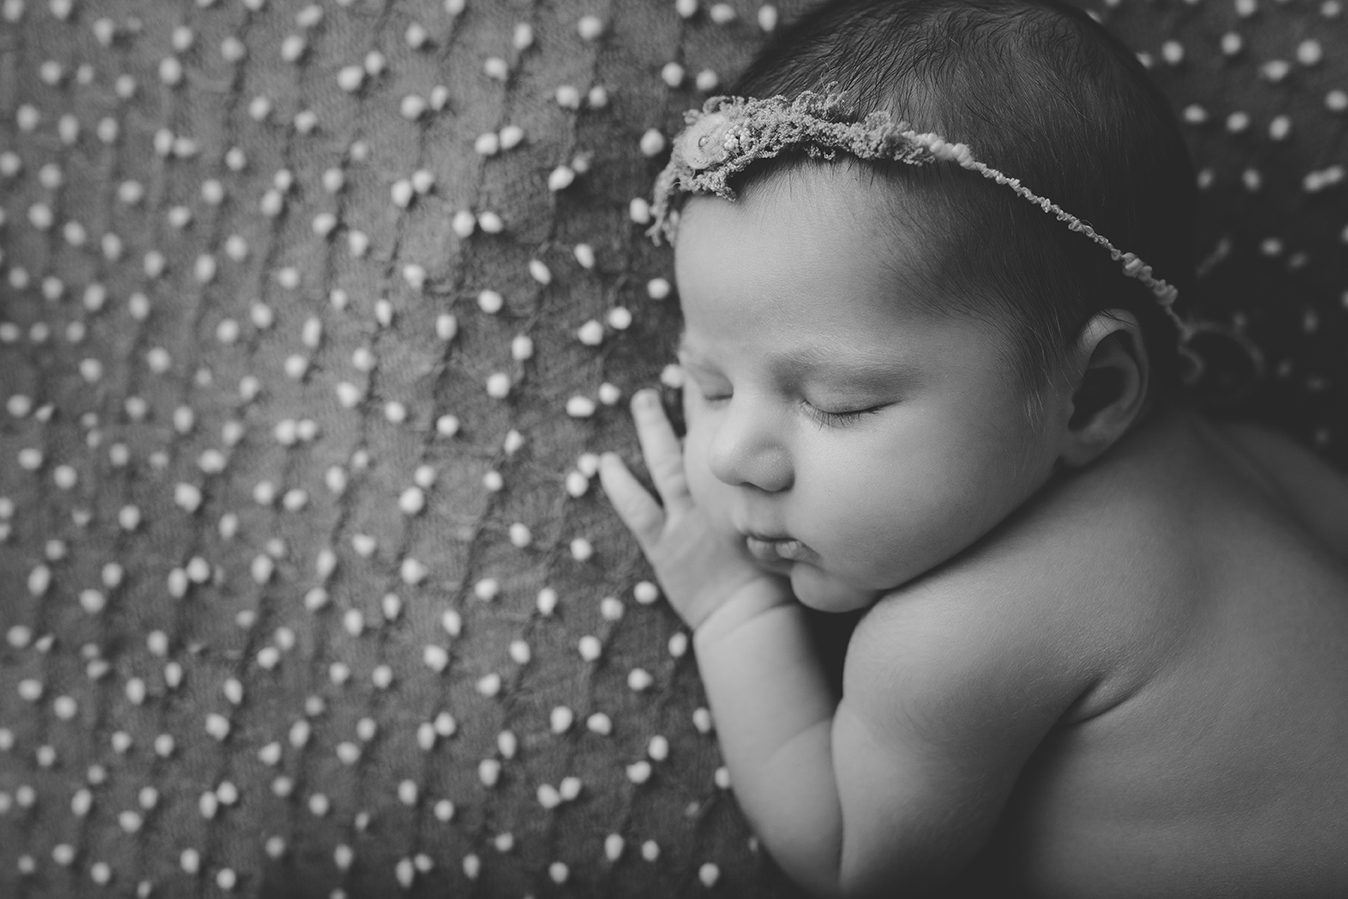 edmonton newborn baby girl black and white image